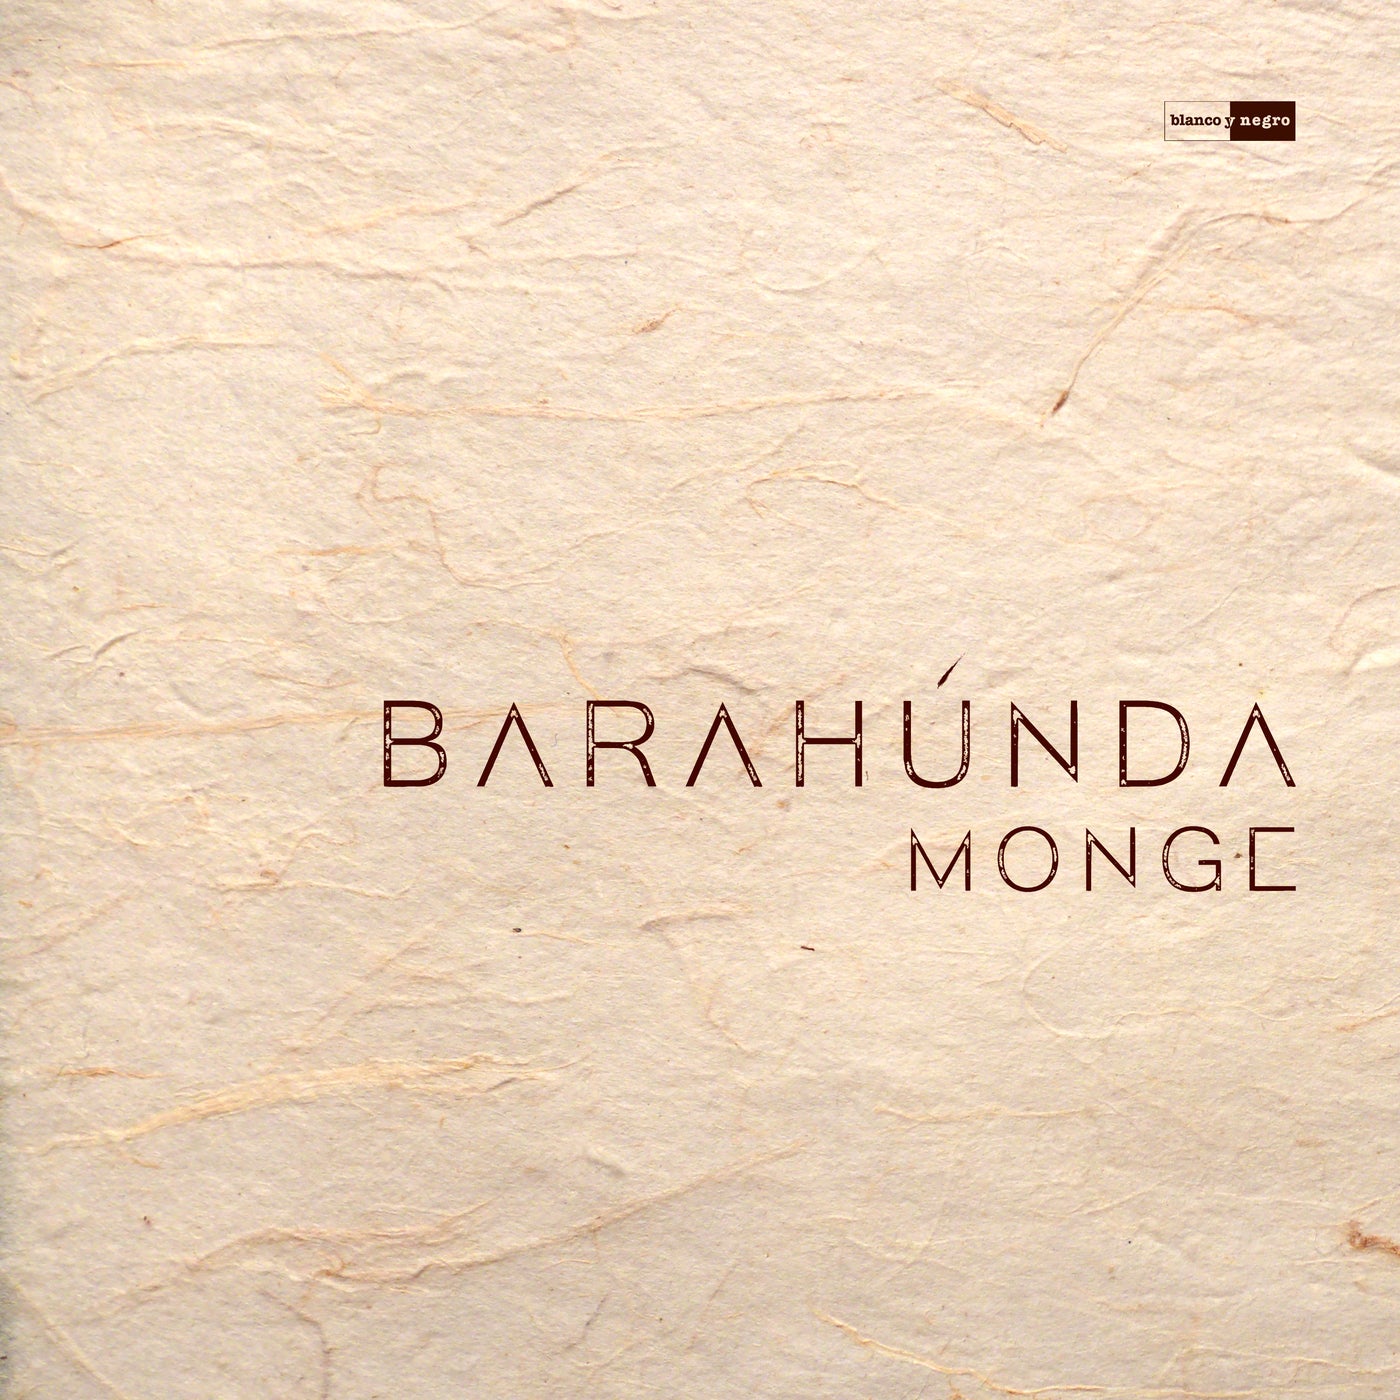 Barahúnda (Extended Mix)